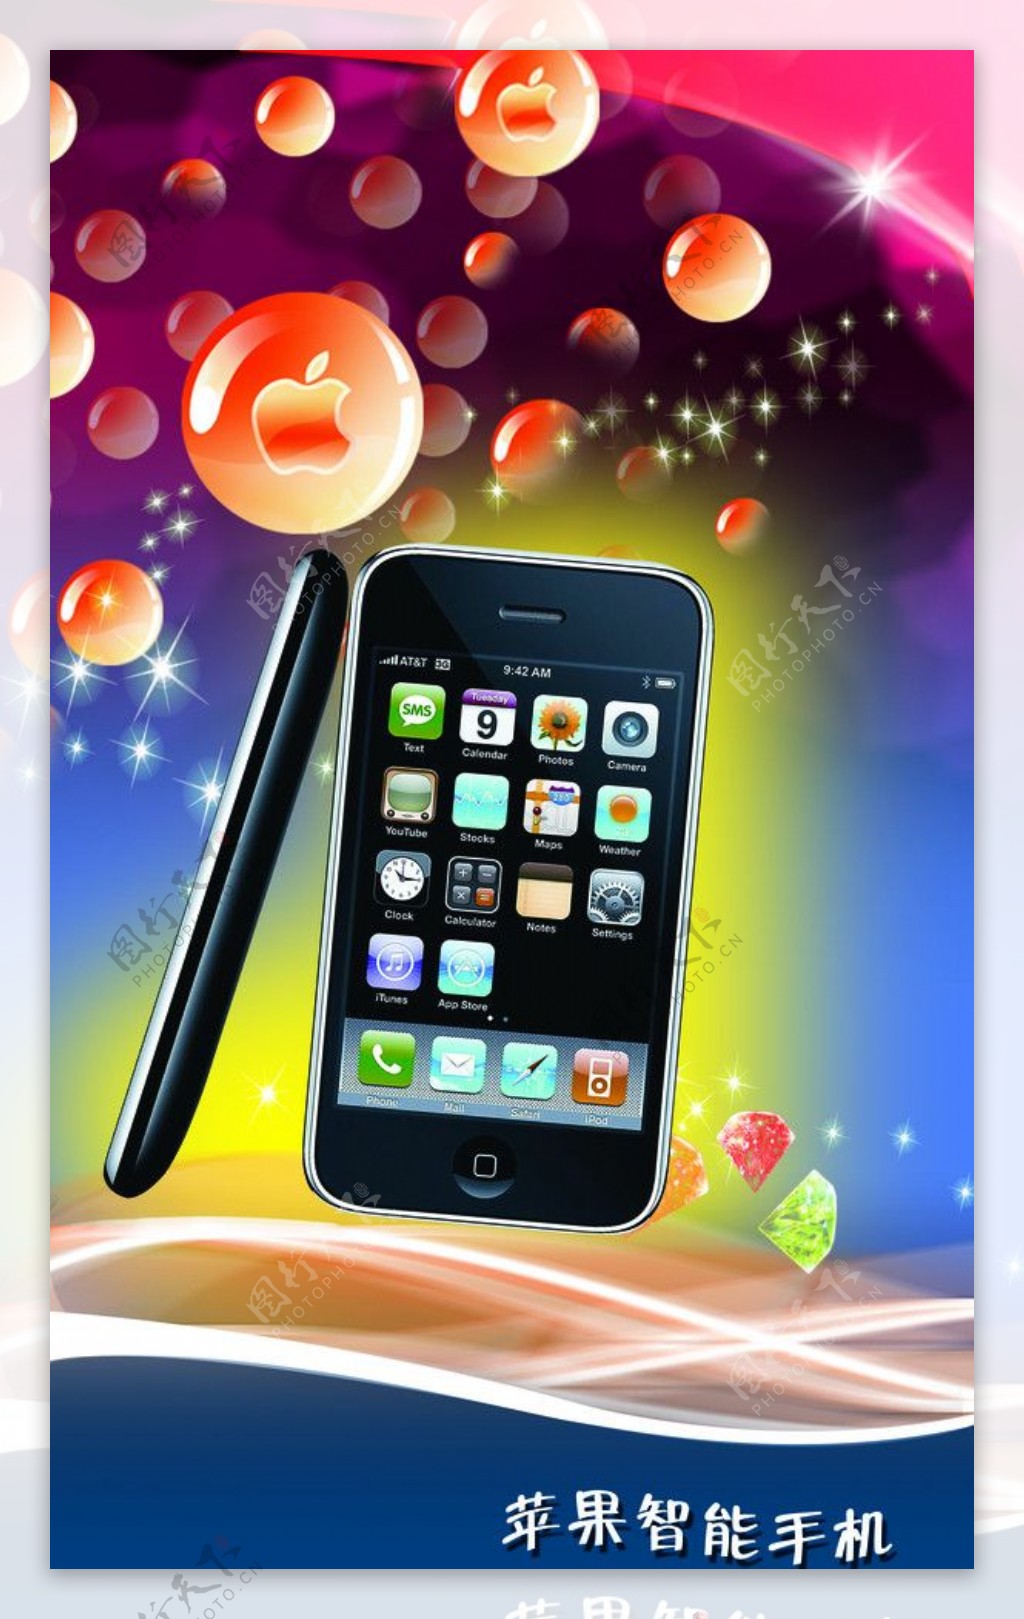 苹果手机广告手机广告苹果标志背景图片